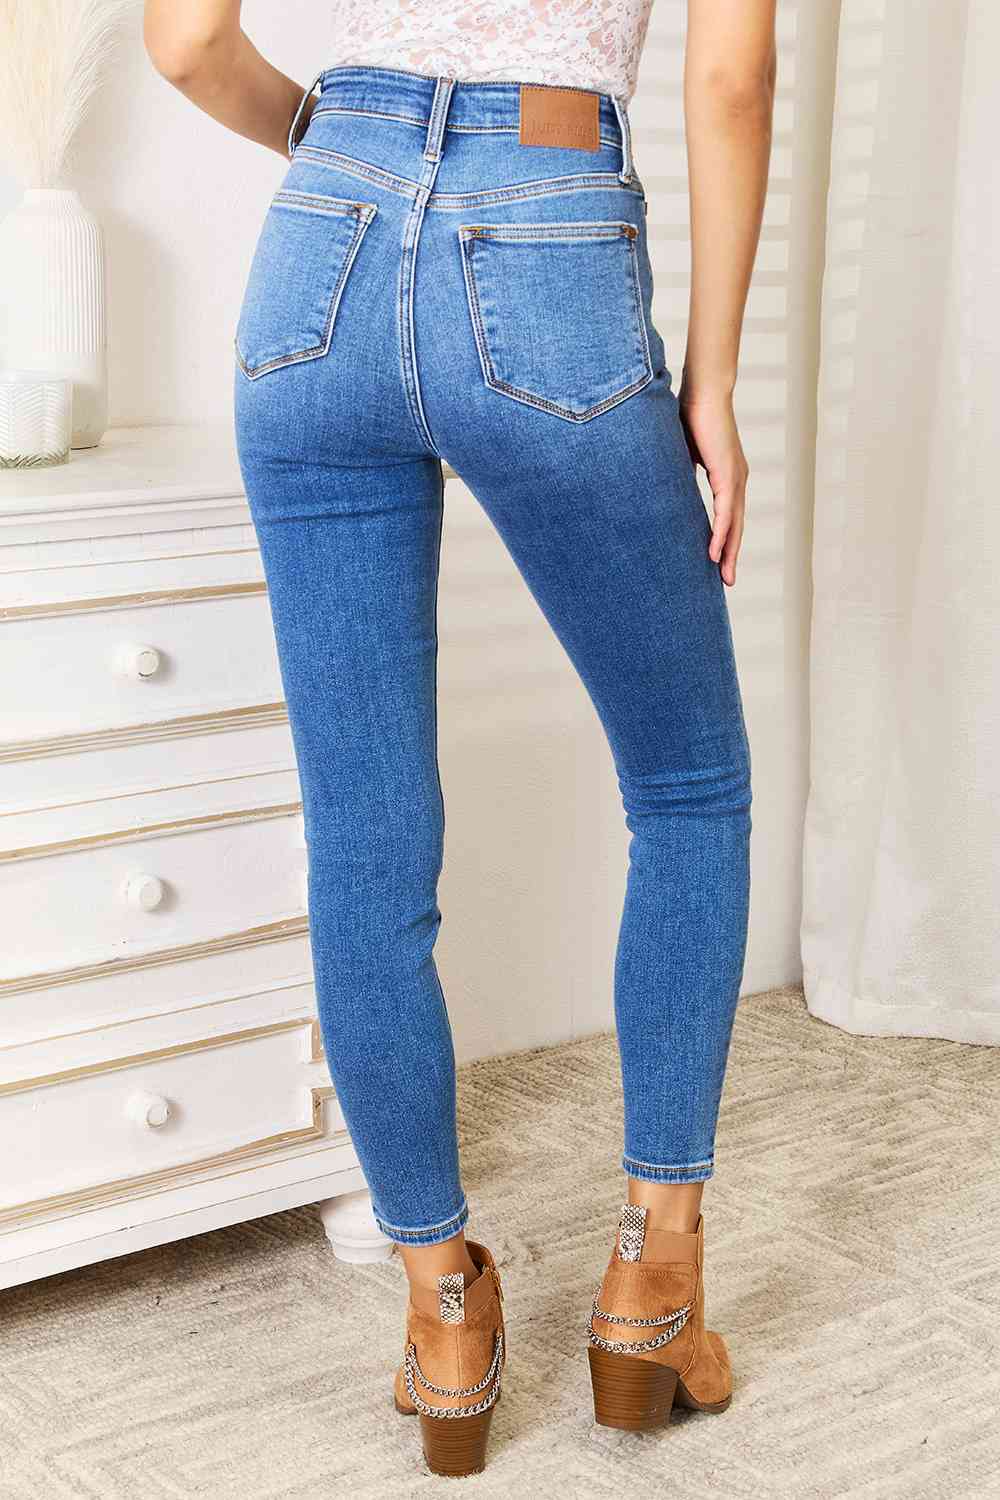 Judy Blue Full Size High Waist Skinny Jeans - Scarlett's Riverside Boutique 